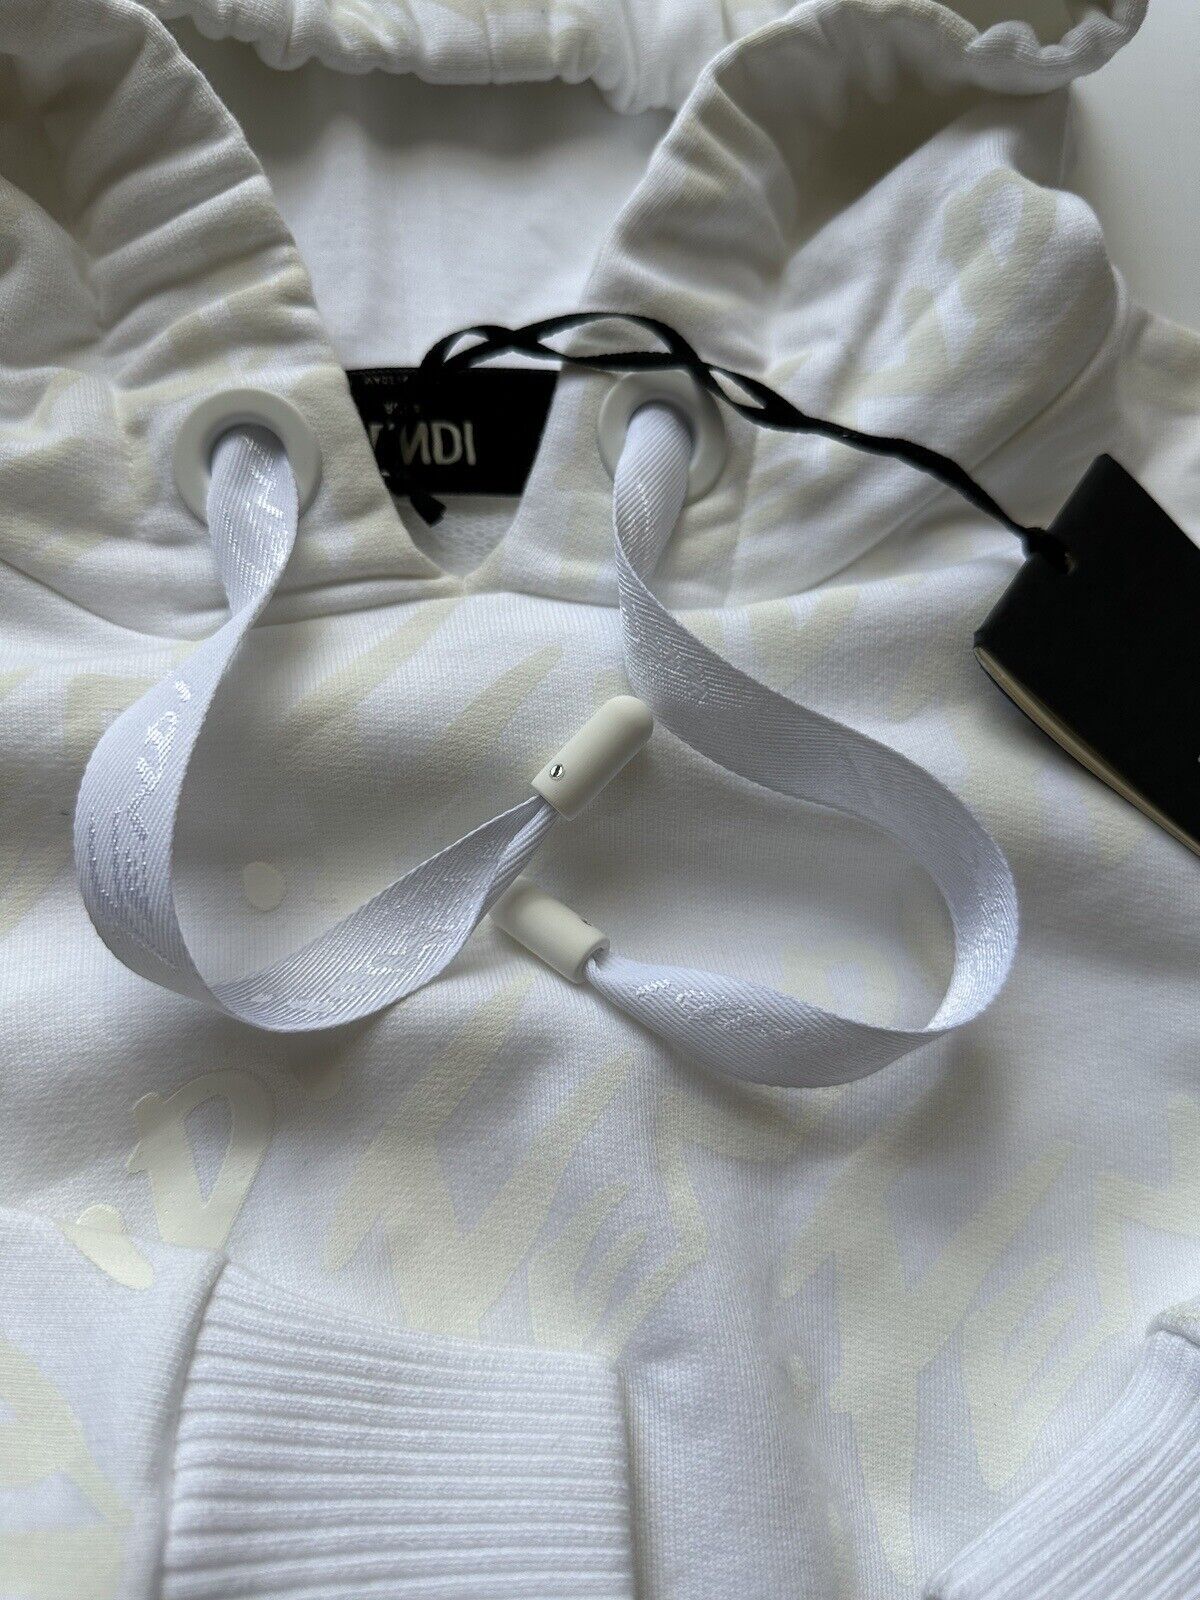 NWT 1100 долларов США Fendi Женская молочно-белая вязаная куртка Fendi с капюшоном 4 США (40 ЕС) IT 